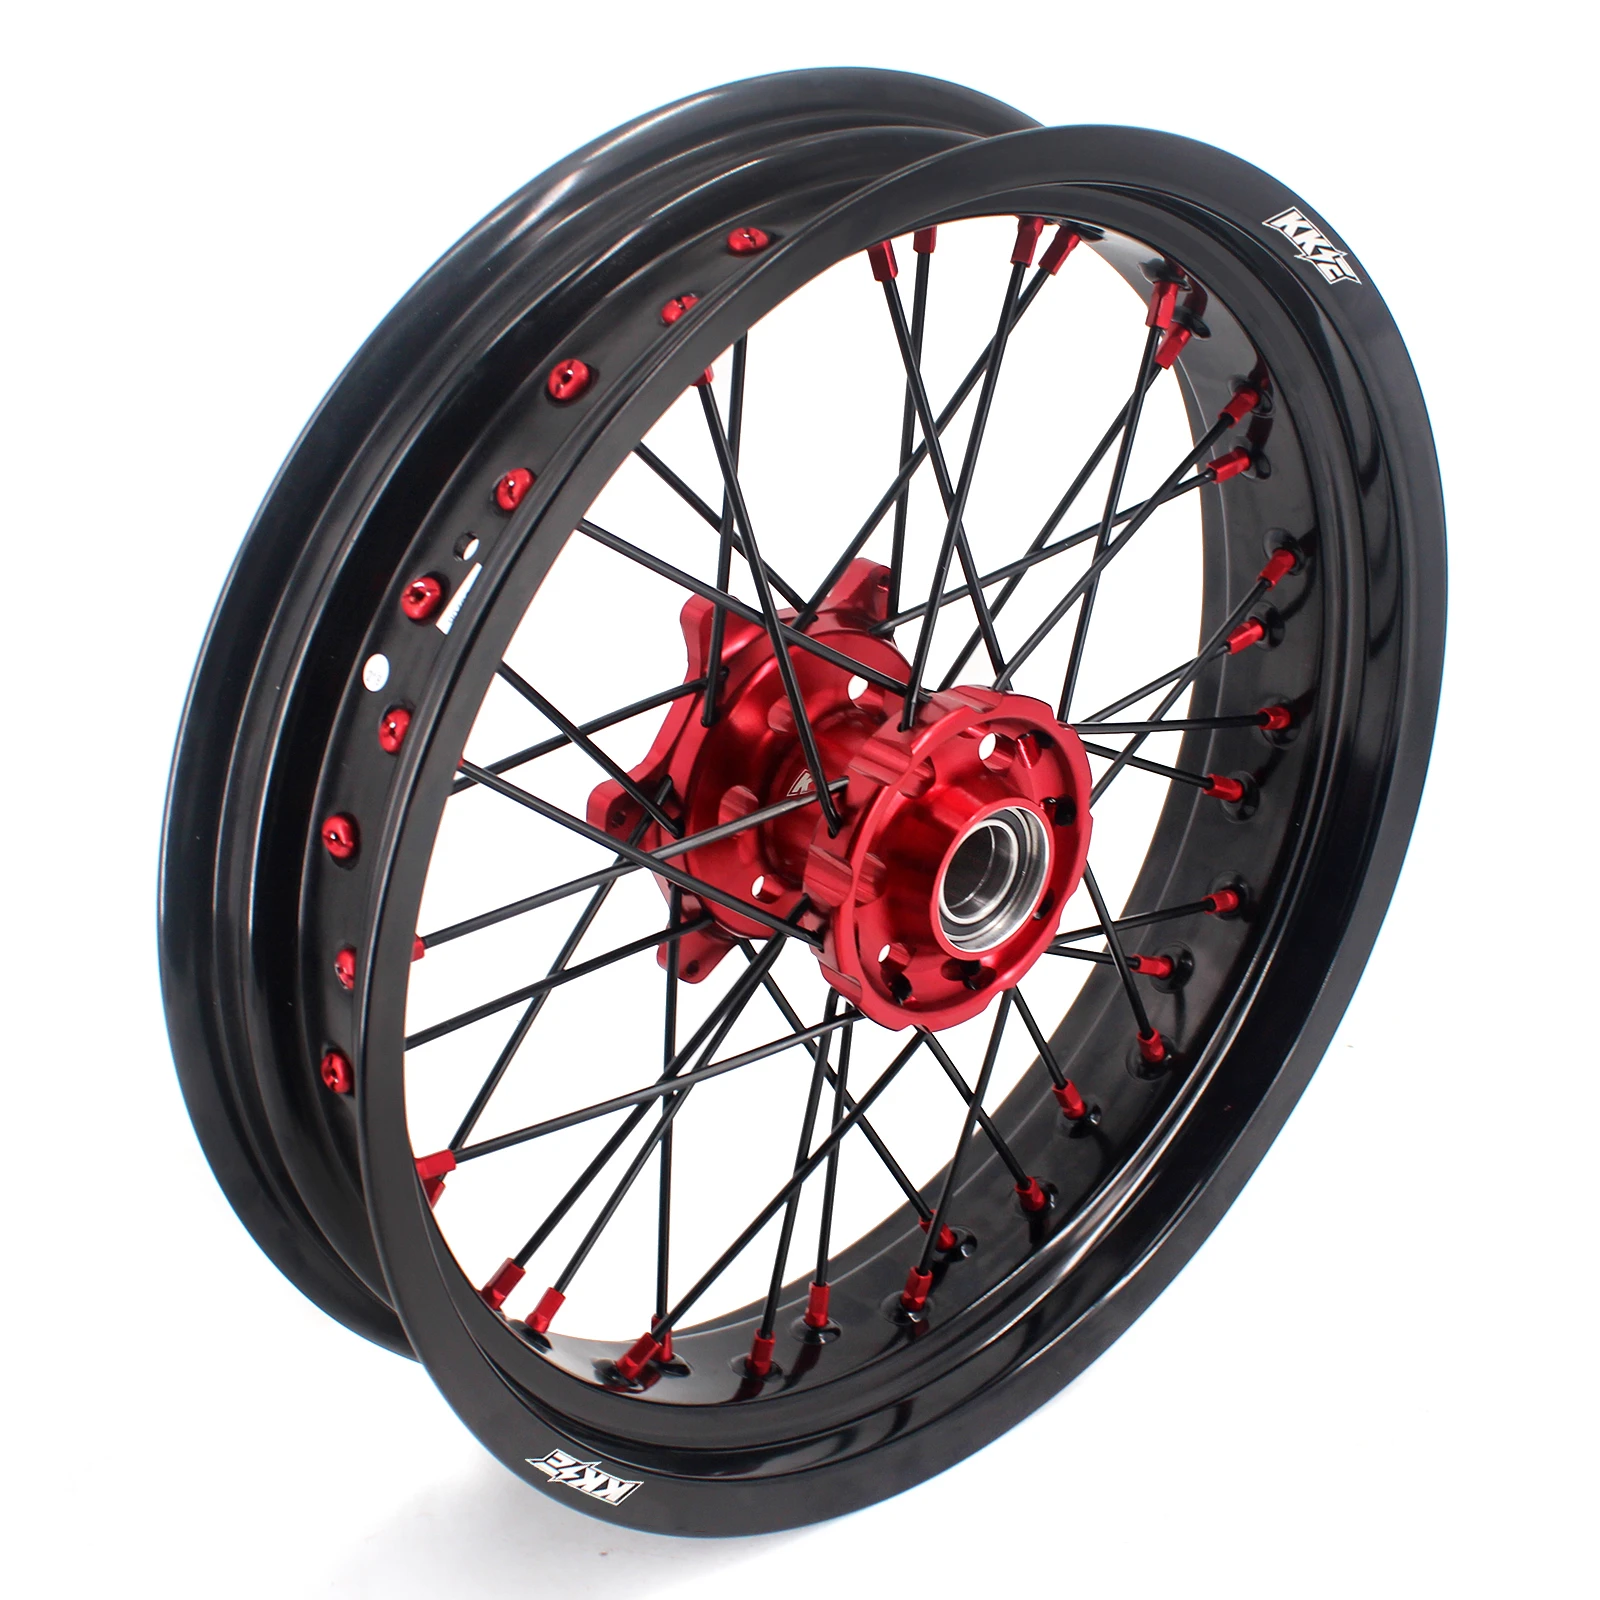 KKE 3.5/5.0  Dirt Bike Motorcycle Wheels Compatible with Gas Gas 2021 Red Hub/Nipple Black Rim Black Spoke